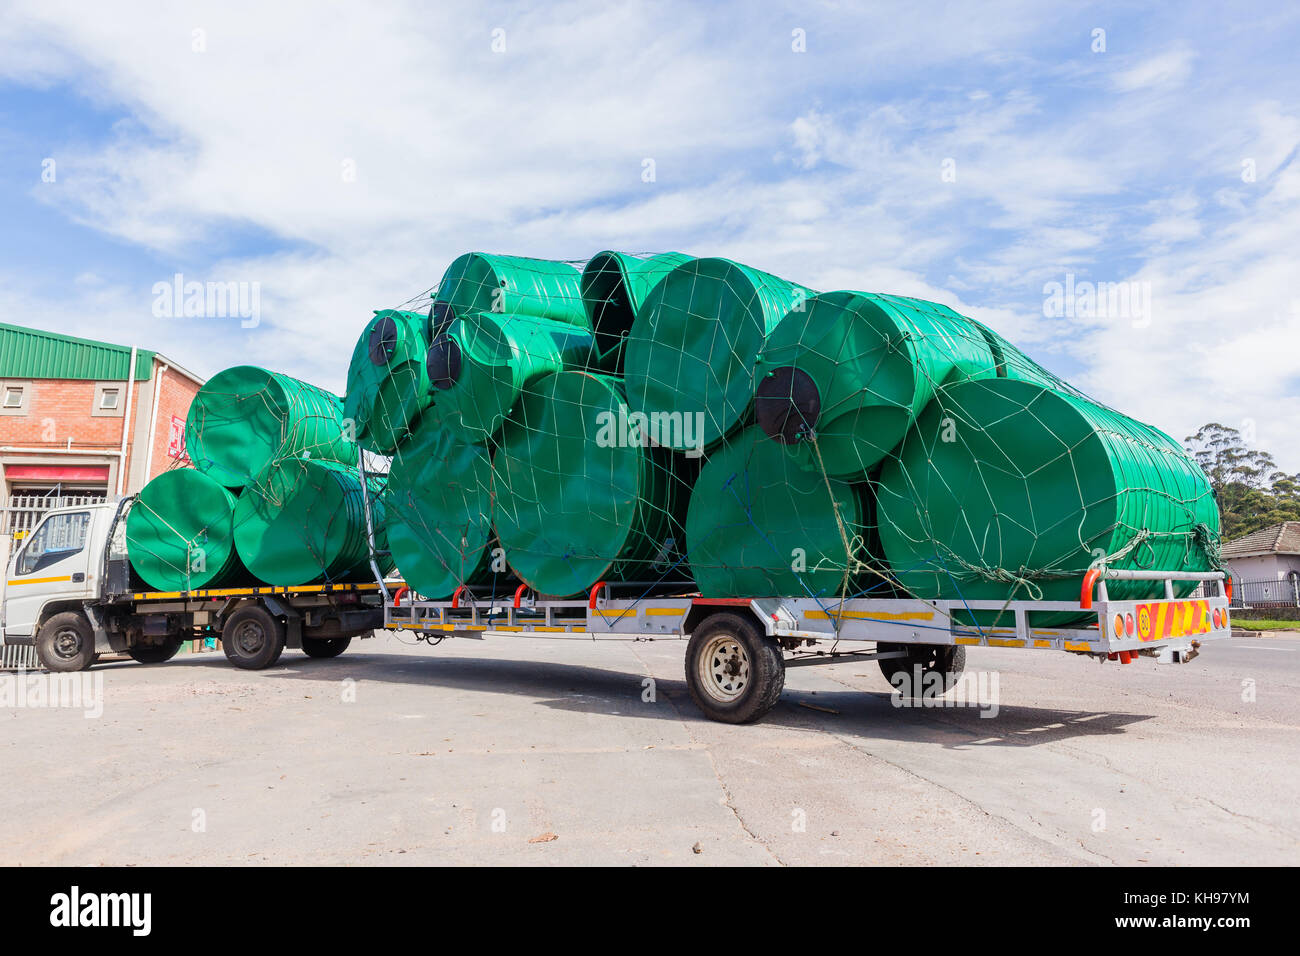 Camion et remorque avec de grands réservoirs d'eau en plastique pour la livraison. Banque D'Images